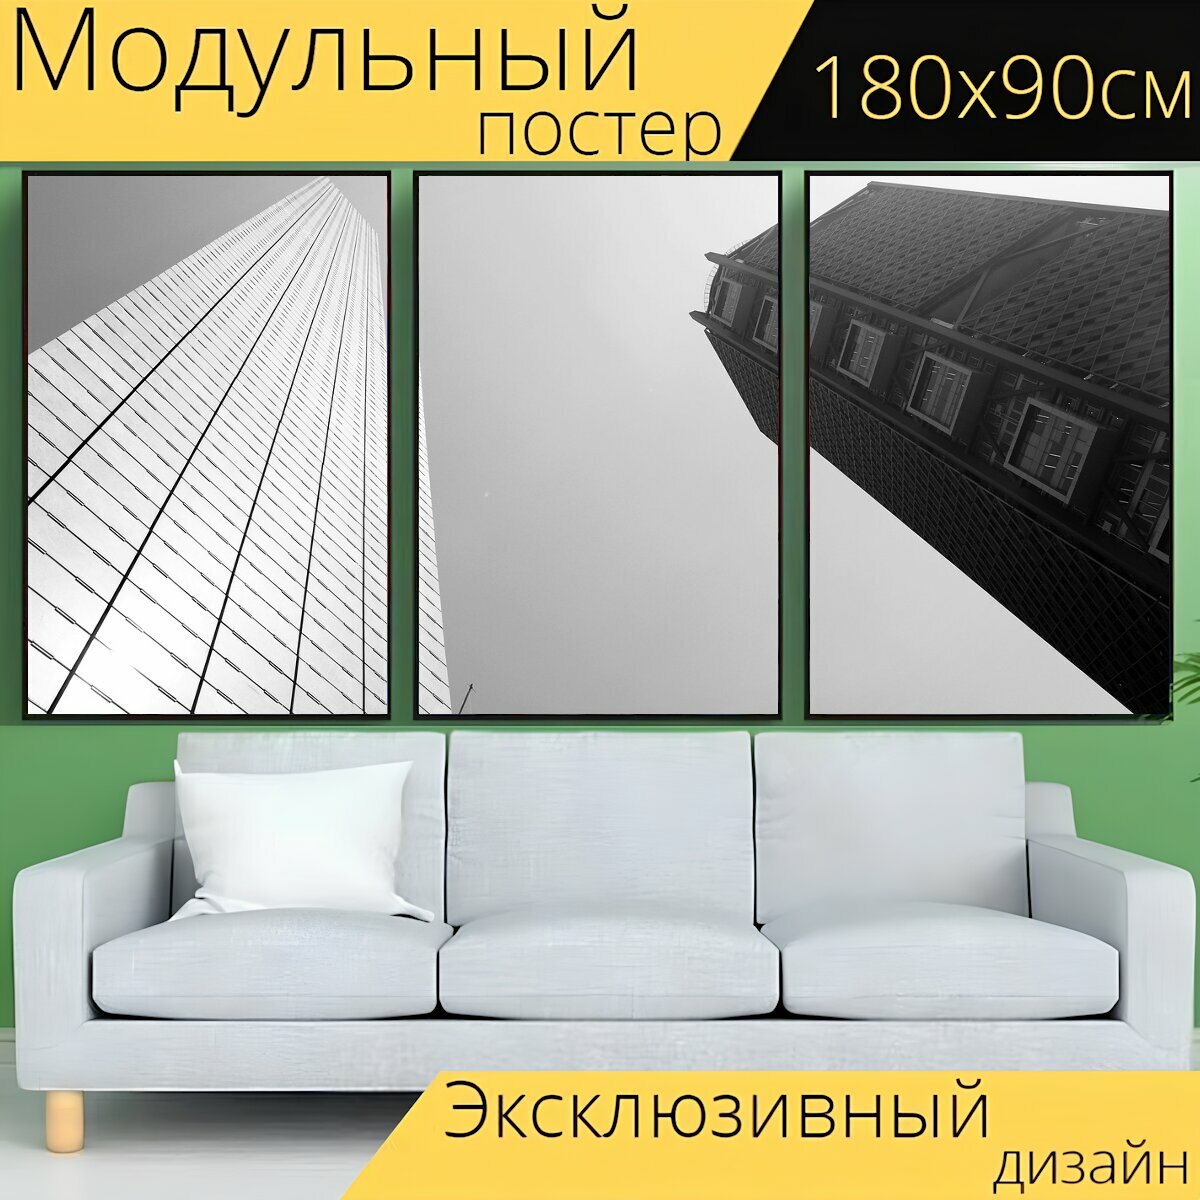 Модульный постер "Архитектуры, здания, небоскребы" 180 x 90 см. для интерьера